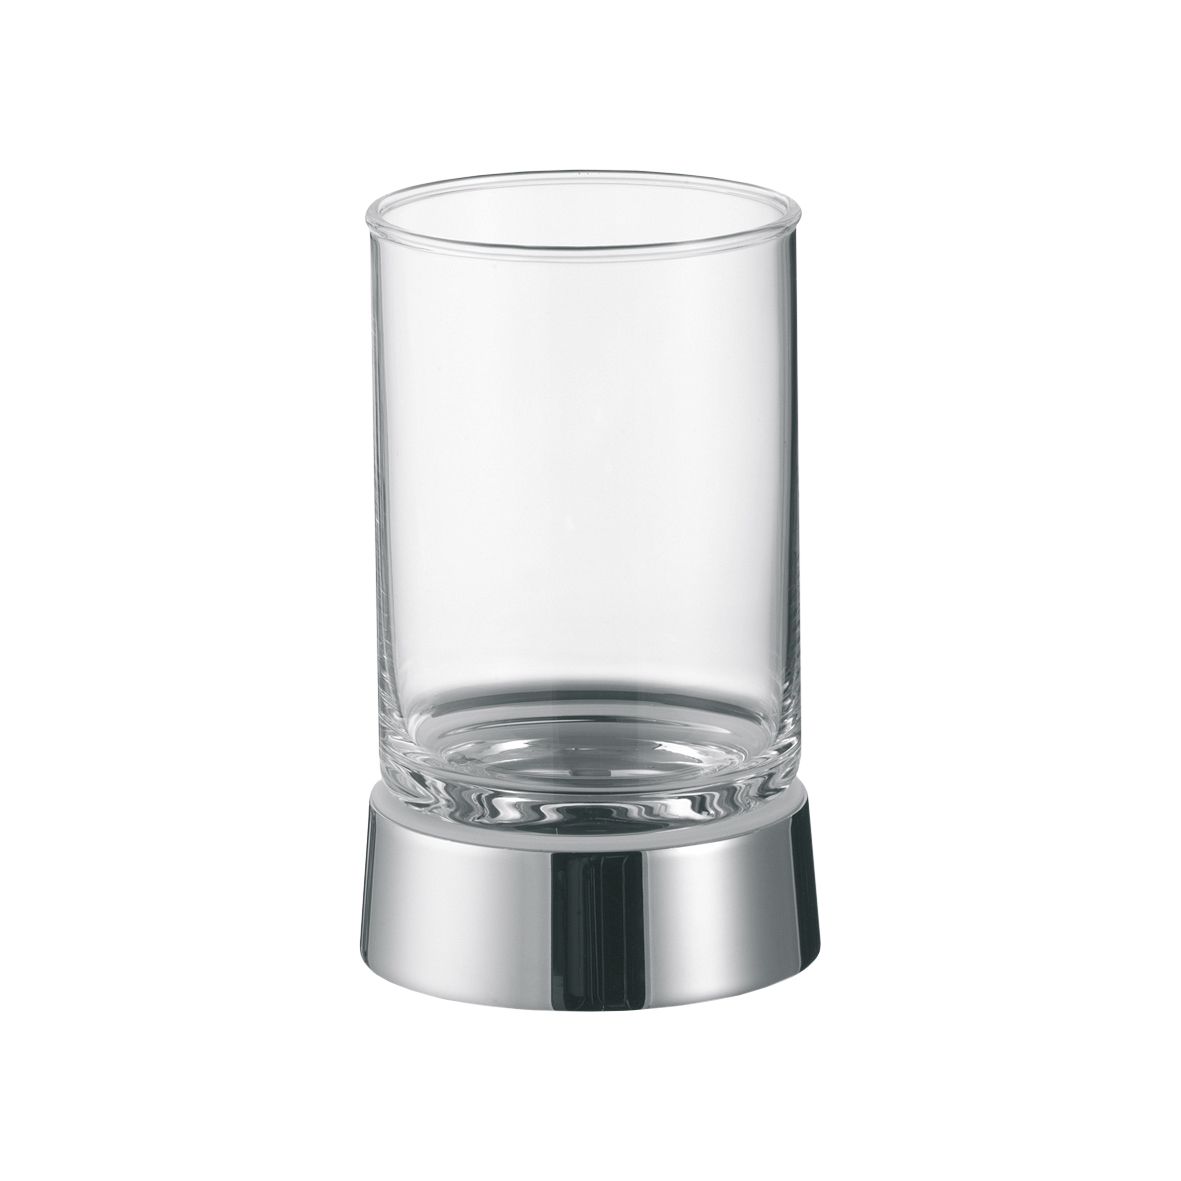 AVENARIUS Glashalter - Standmodell
Serie 450 4501110010